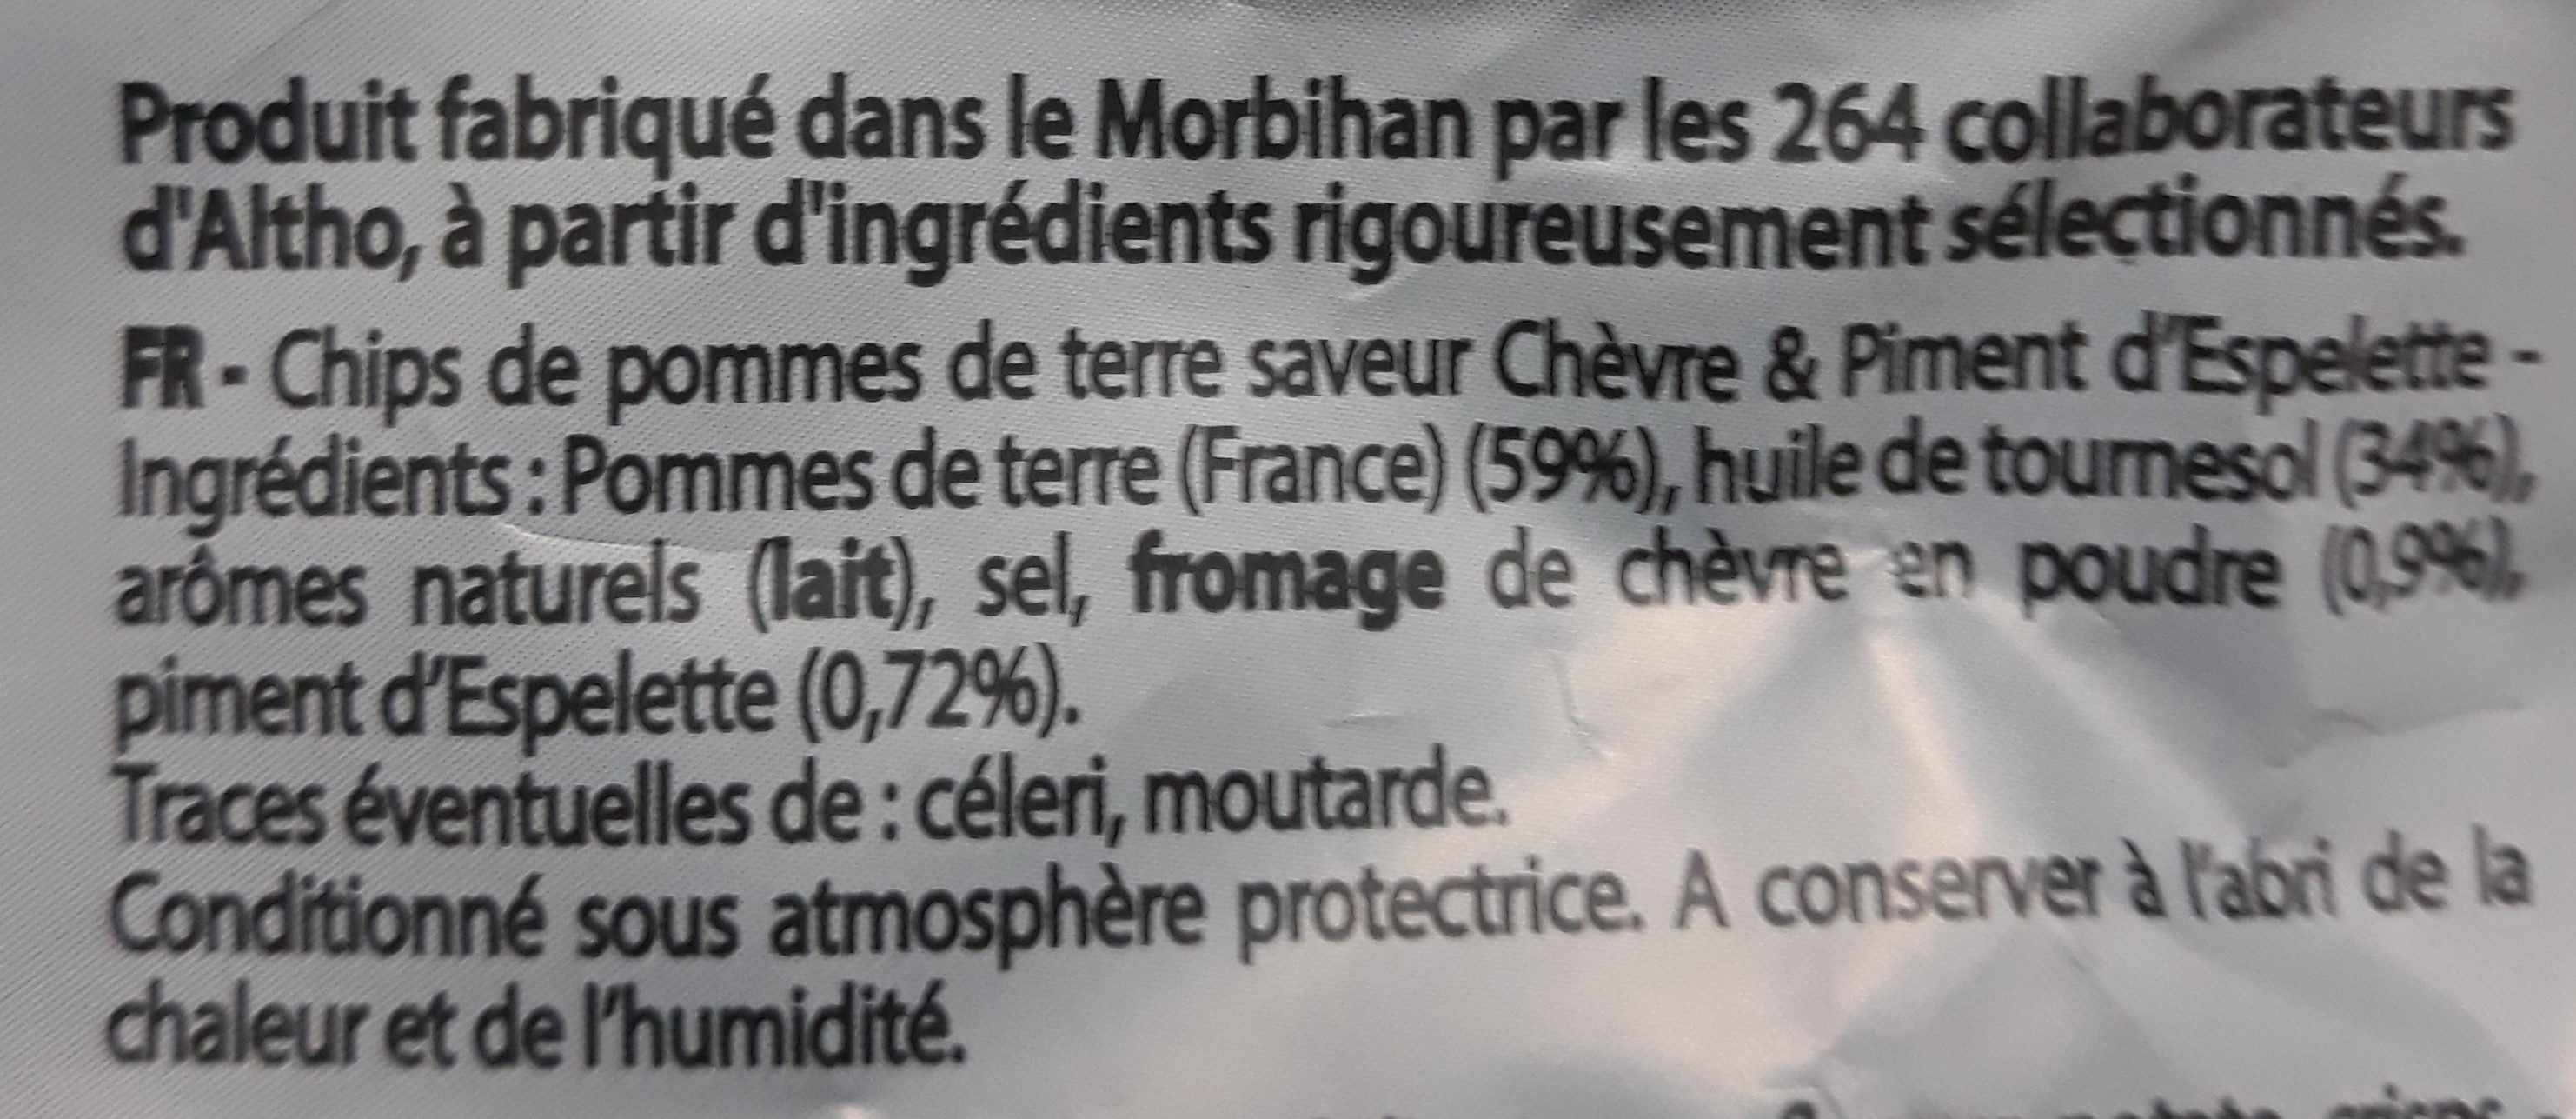 chips saveur chèvre & piment d'espelette - المكونات - fr